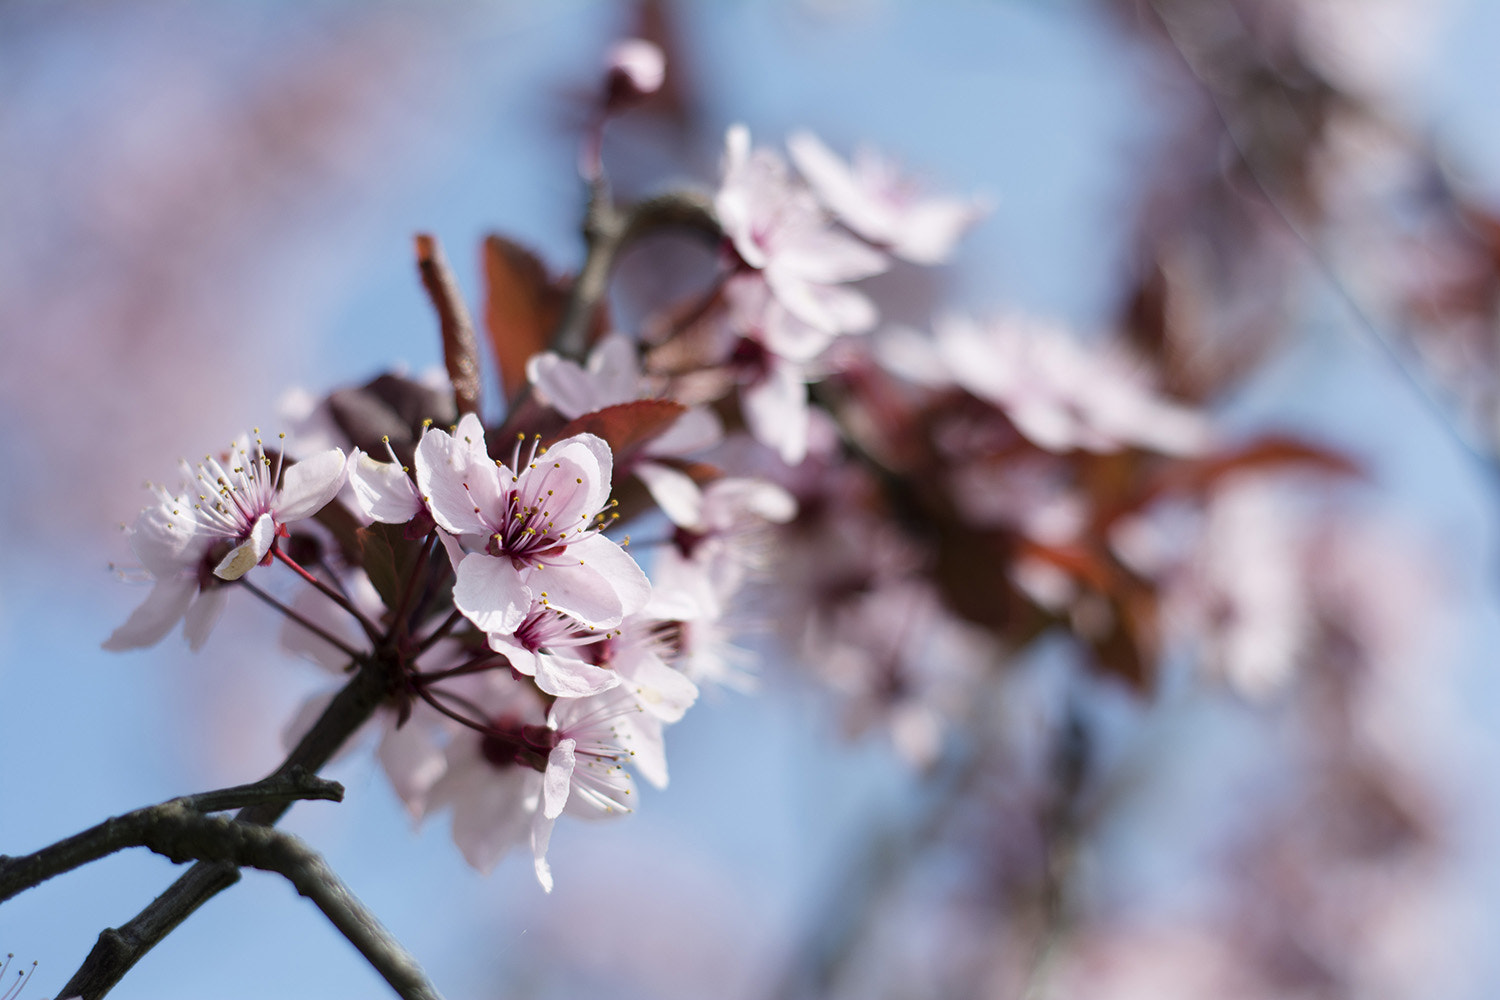 Nikon D5200 + AF Nikkor 50mm f/1.8 sample photo. Cherry blossom photography